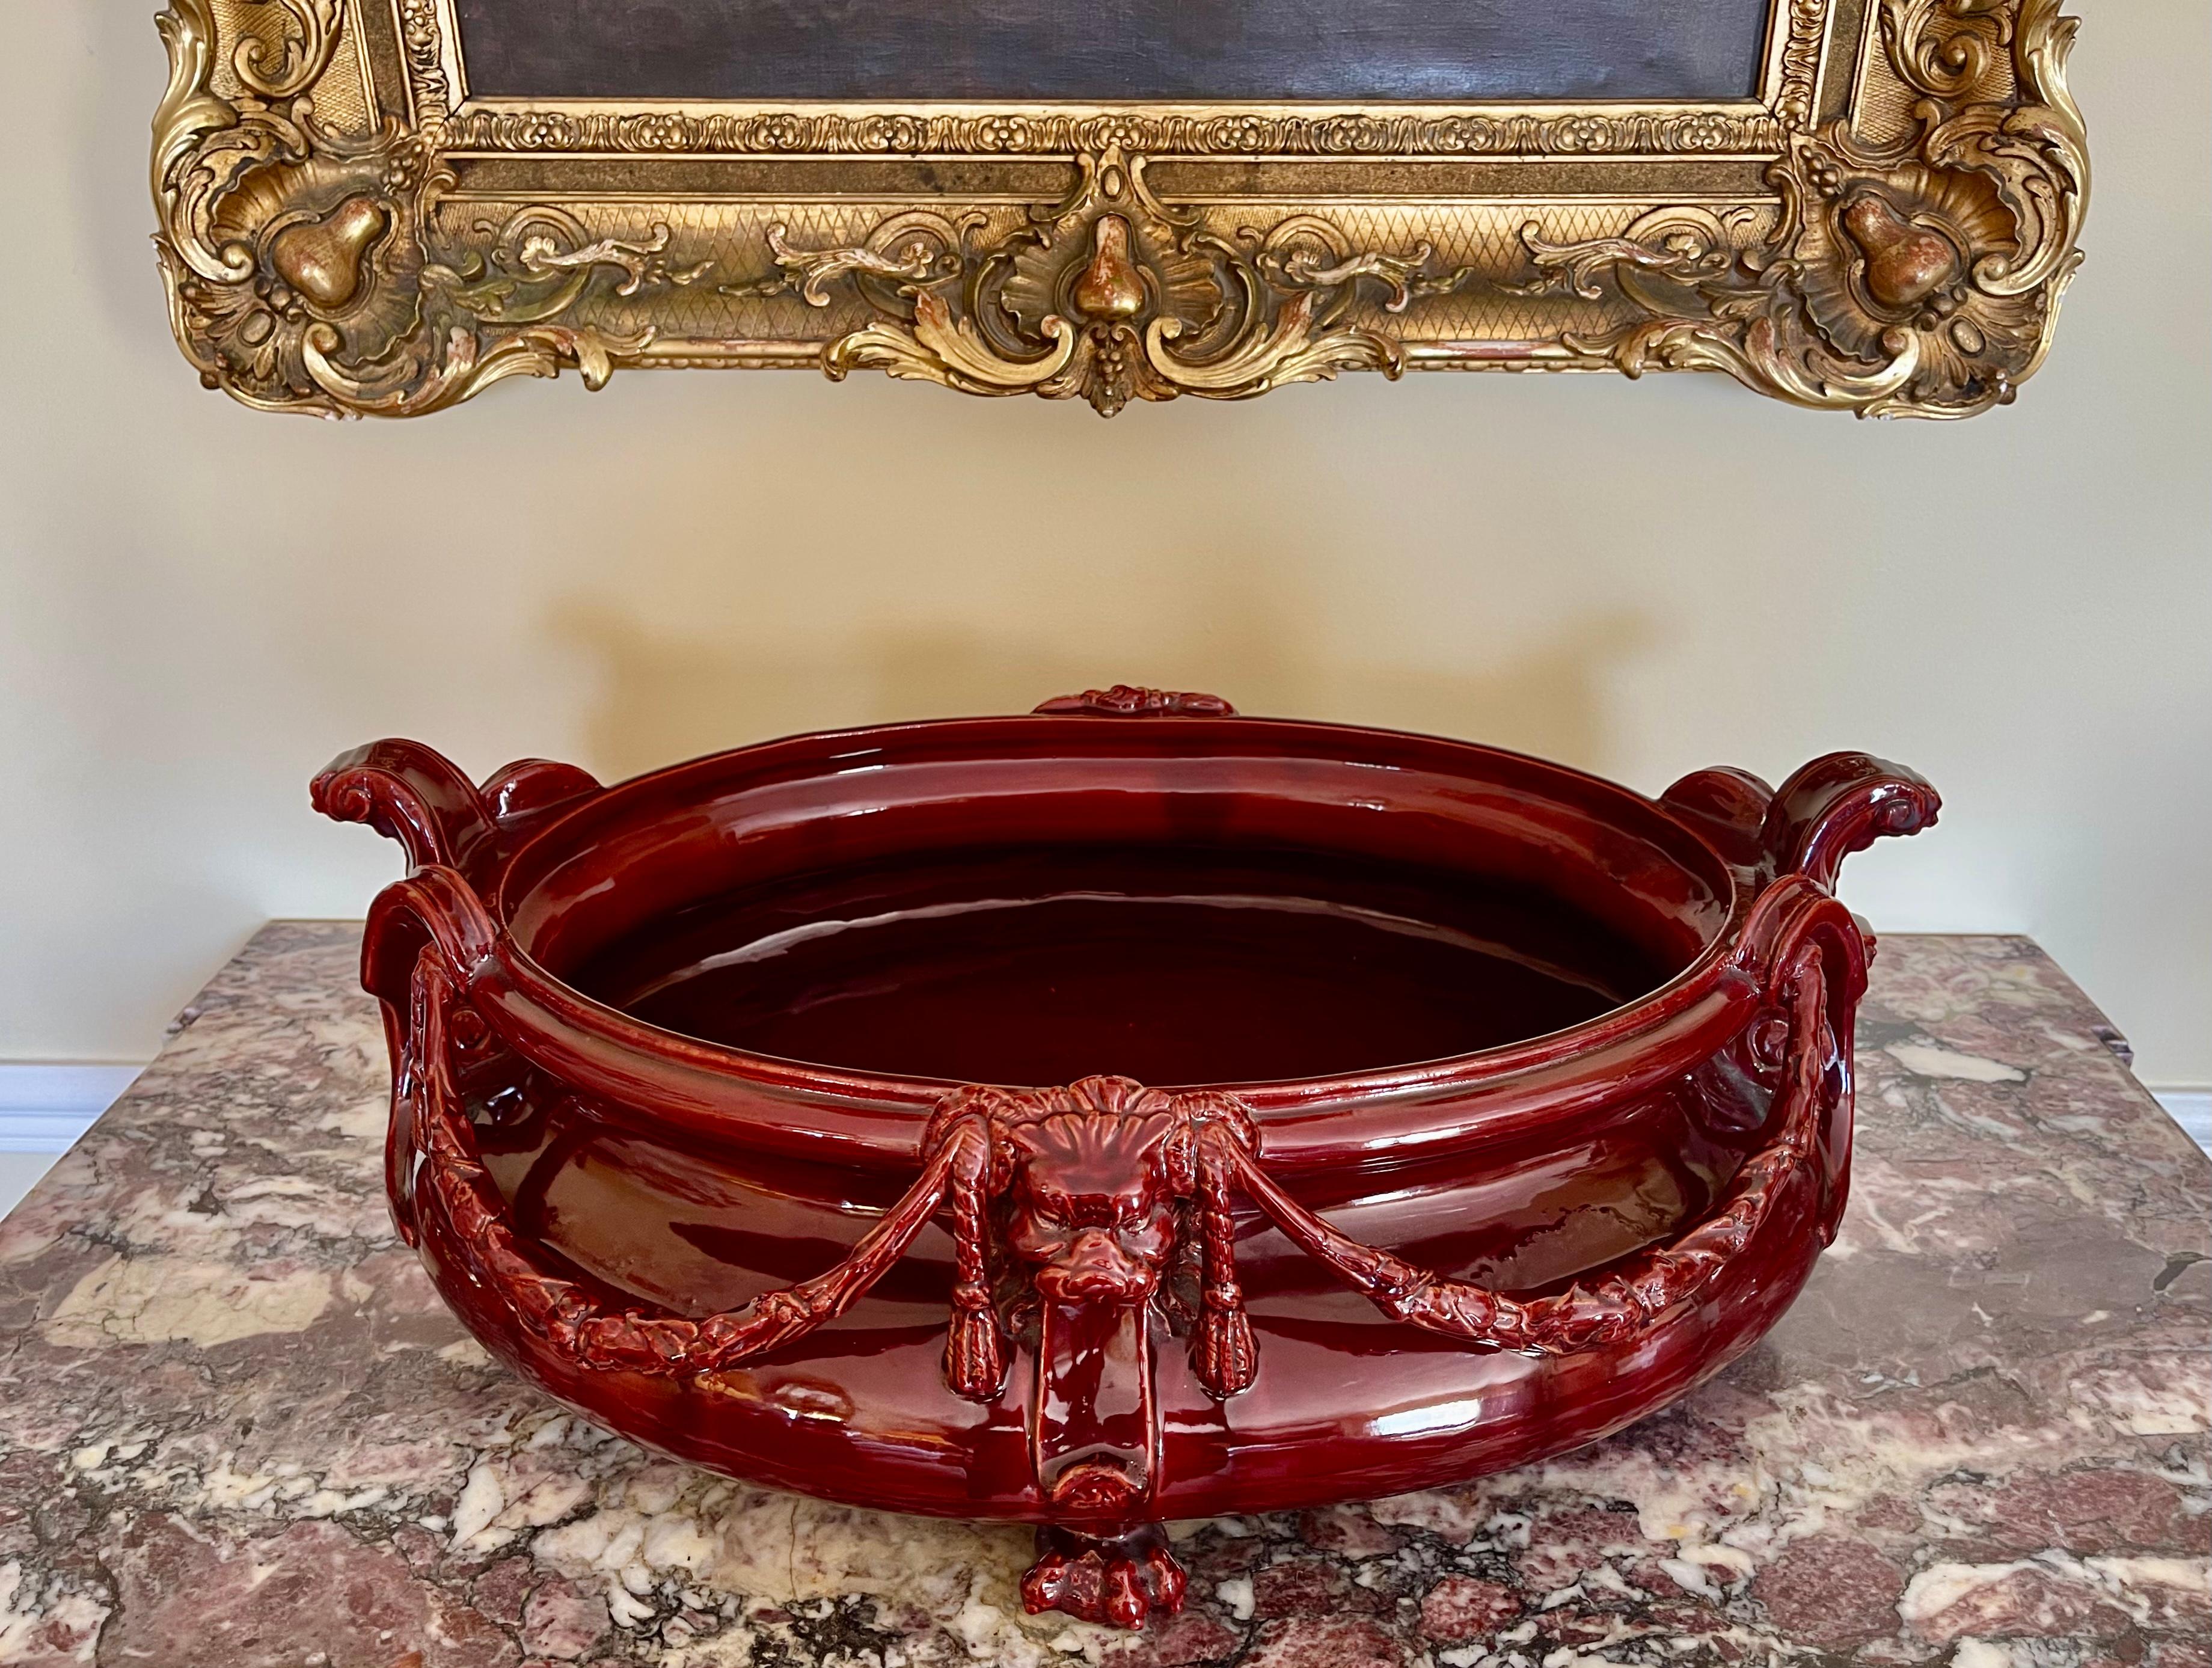 Grande jardinière en céramique émaillée de couleur rouge cerise de la période Napoléon III datant du 19ème siècle. 
Dimensions intérieures : H 12cm x L 41.5cm x W 29cm